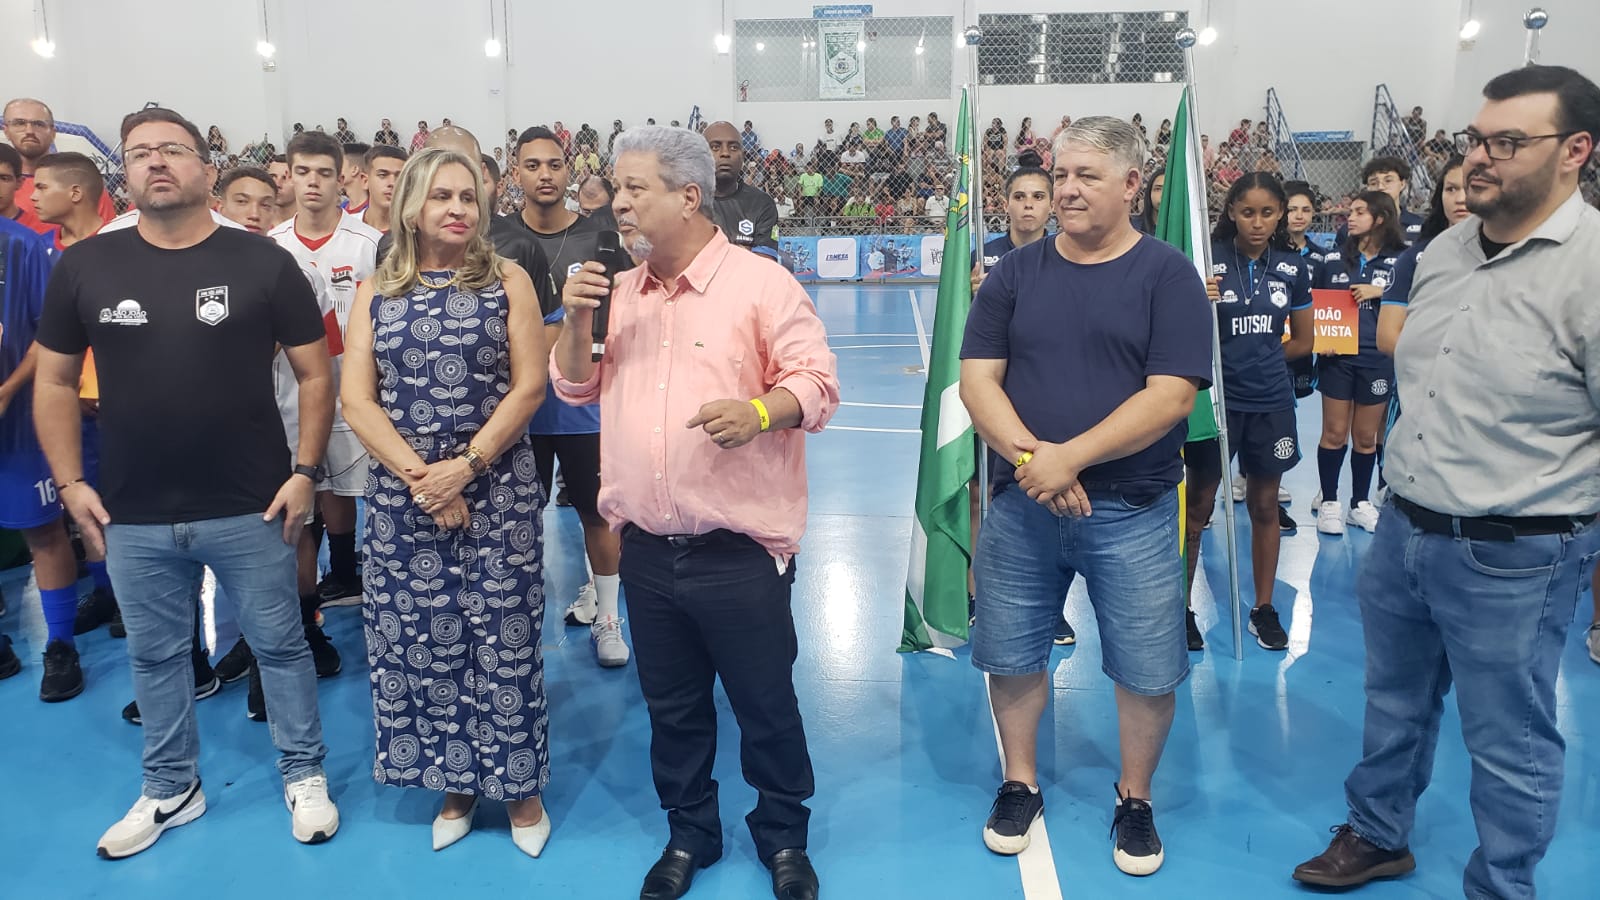 Presidente e vice da Câmara Municipal prestigiam abertura da Taça EPTV de Futsal em São João